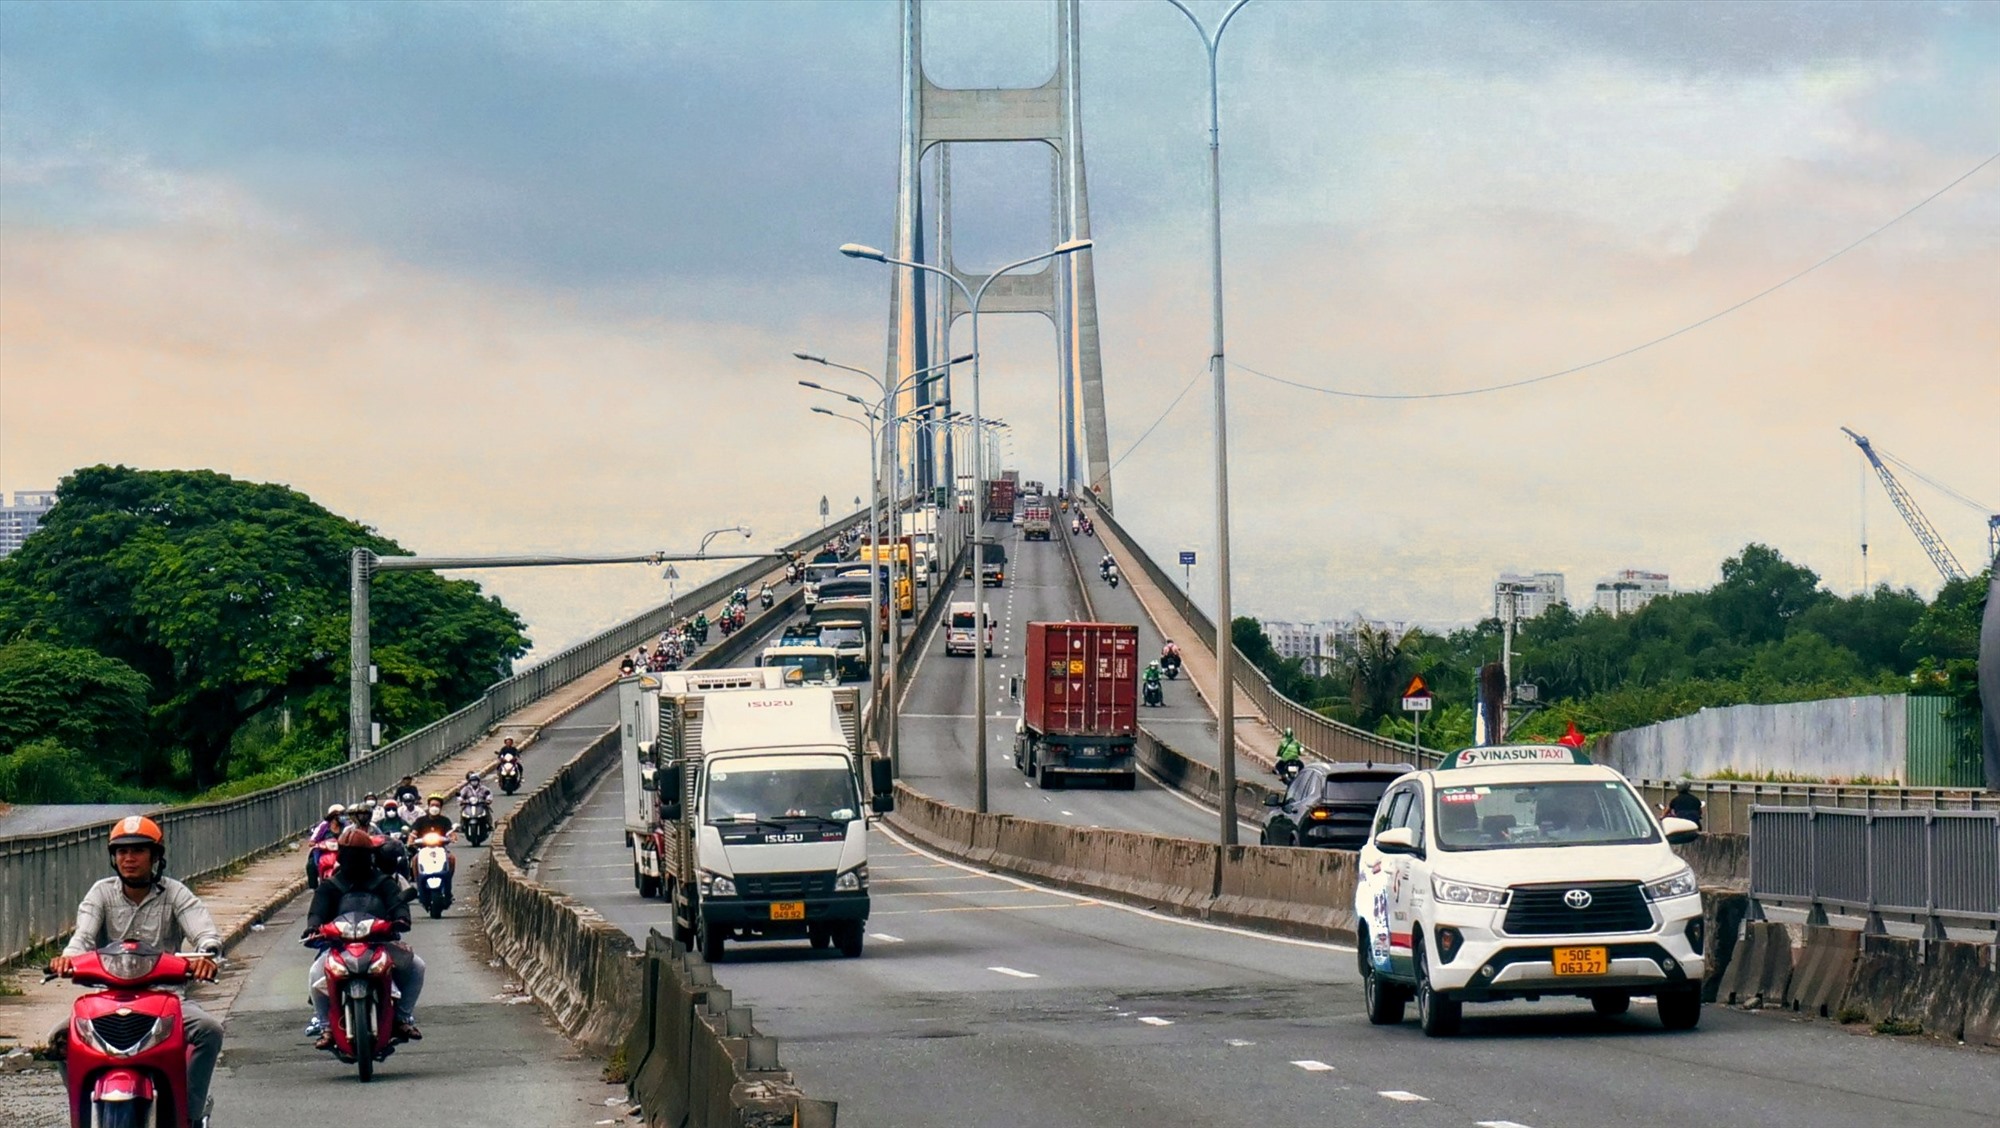  Cầu Phú Mỹ đưa vào sử dụng giúp việc lưu thông trên Quốc lộ 1 đoạn từ miền Bắc, miền Trung đi Đồng bằng sông Cửu Long (qua địa phận TPHCM) được rút ngắn.